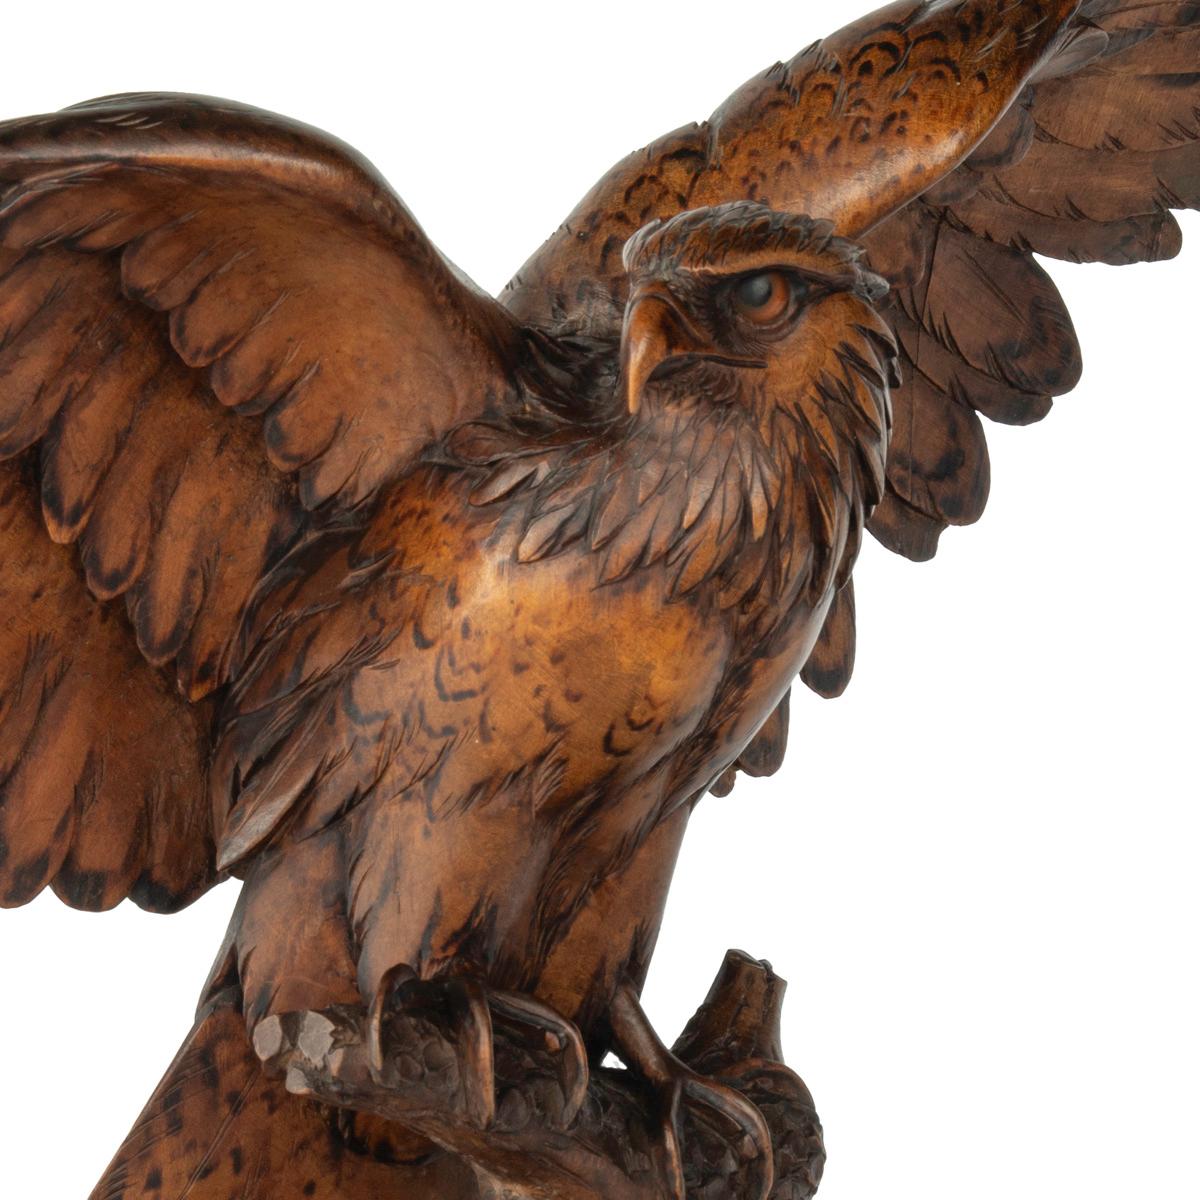 Grande sculpture en bois de noyer de la Forêt-Noire représentant un aigle perché sur une souche d'arbre, les ailes déployées et la tête tournée vers la droite, avec des détails tachés de noir sur les plumes et le dos.  yeux en verre encastrés. 